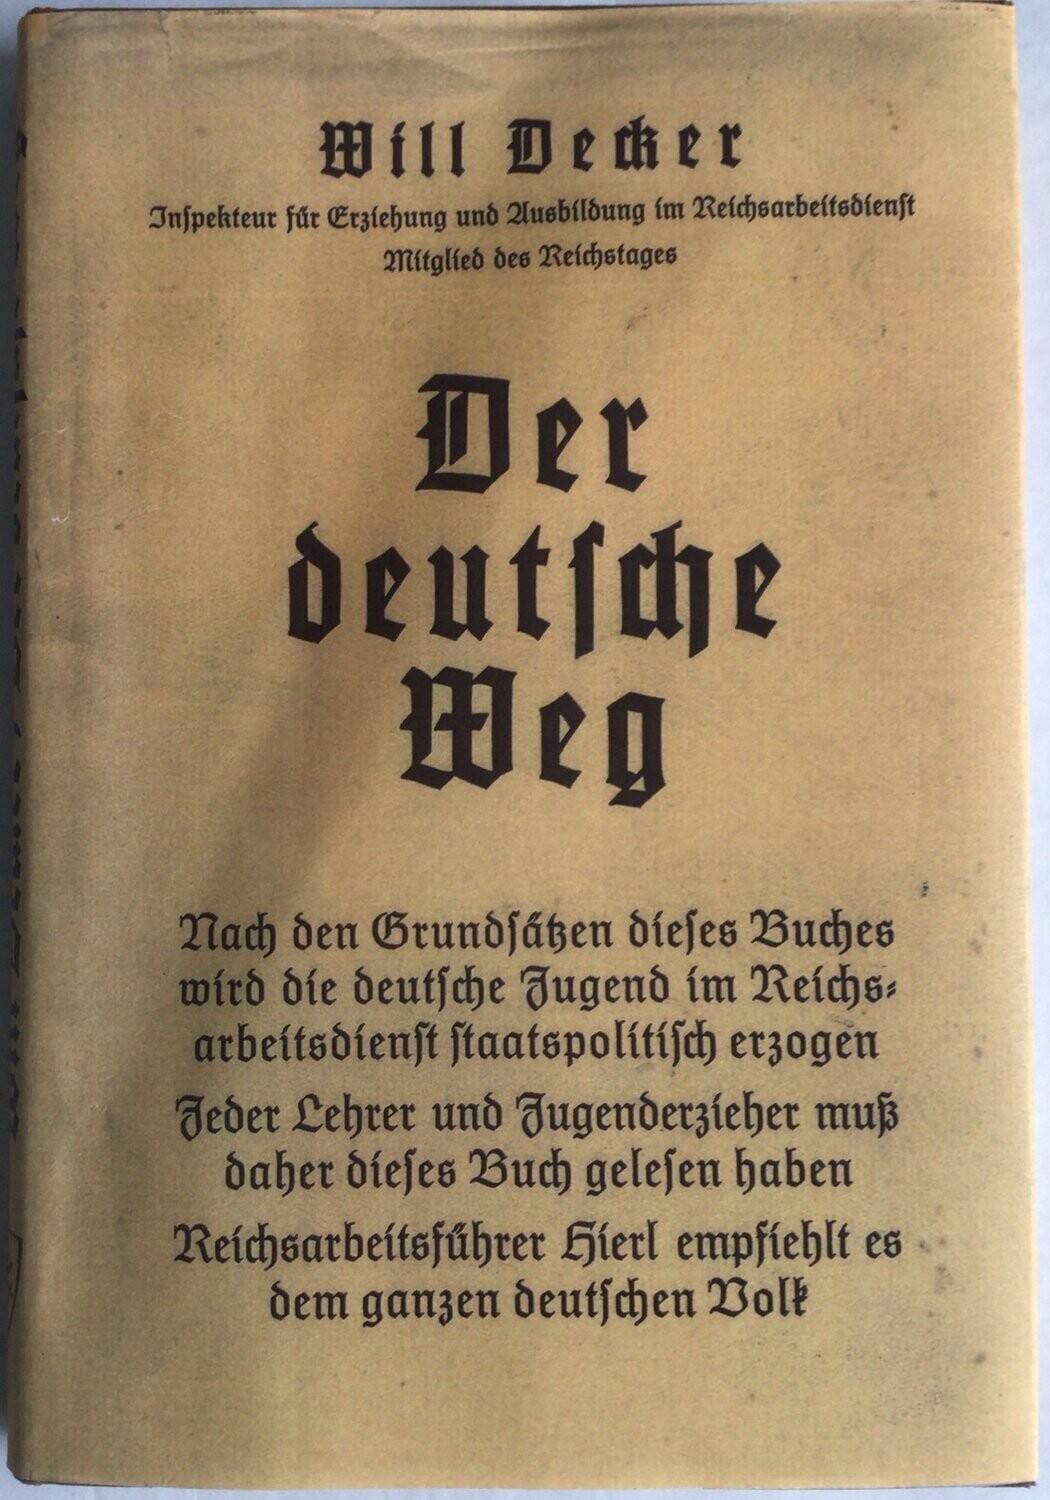 Decker: Der deutsche Weg - Ganzleinenausgabe (4. Auflage) aus dem Jahr 1933 mit Schutzumschlag (Kopie)